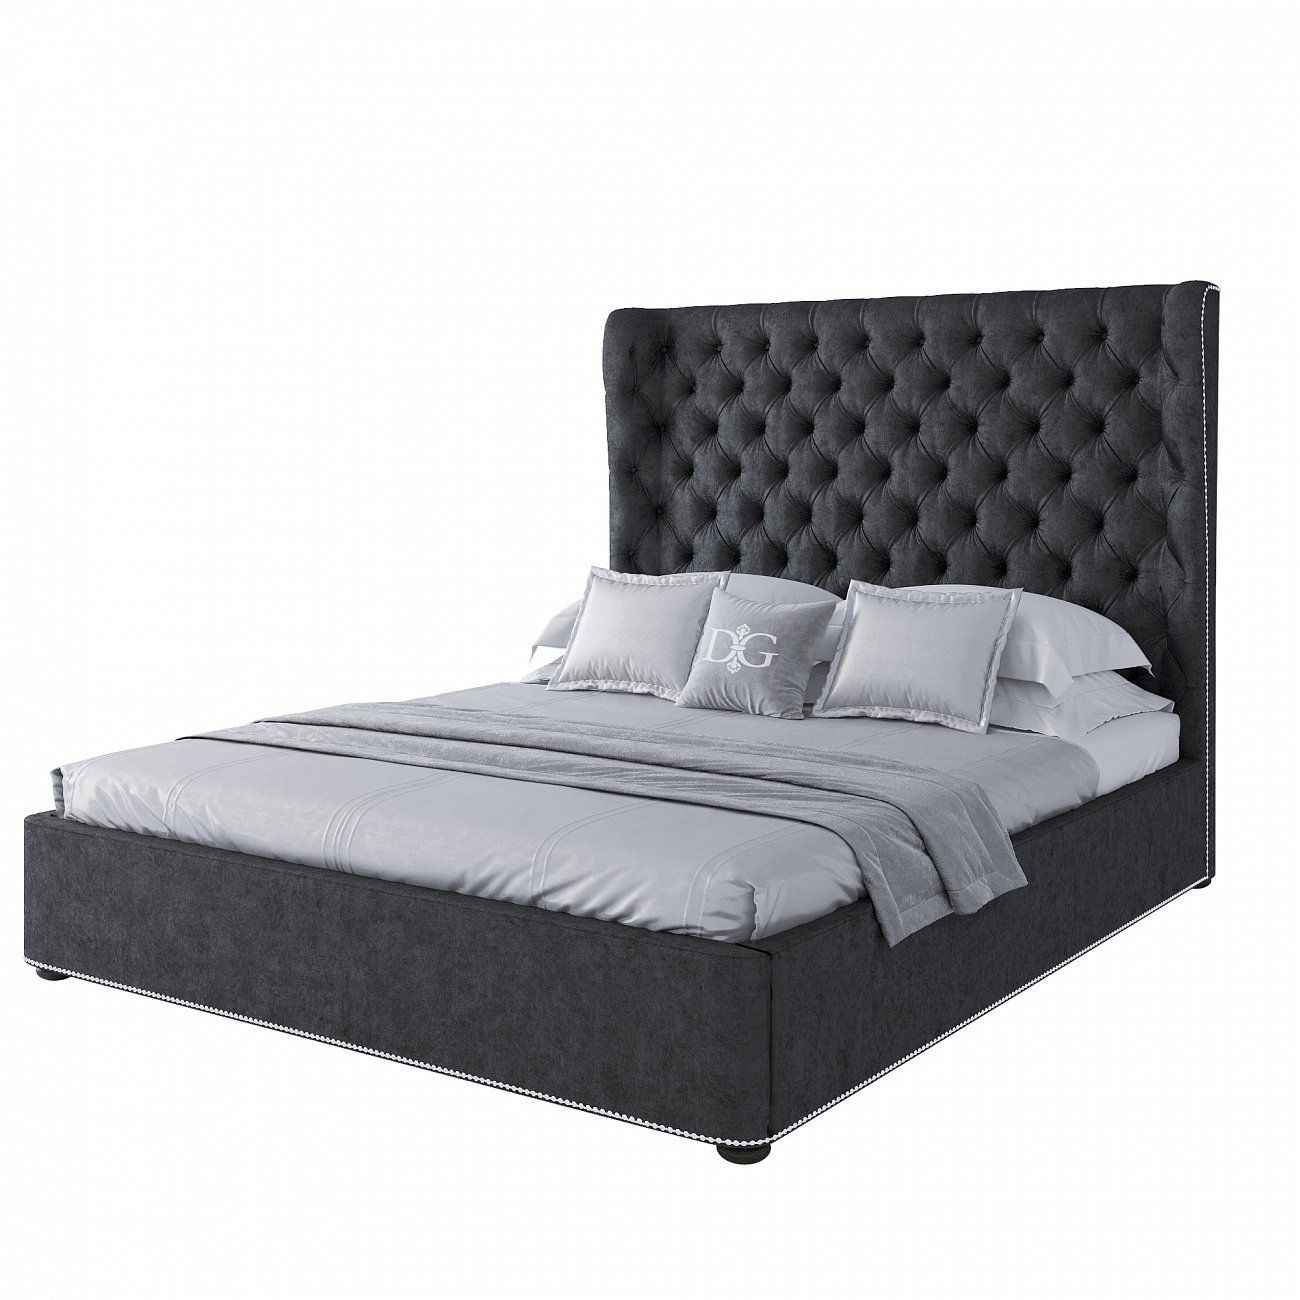 Кровать Henbord двуспальная с мягким изголовьем 160х200 см темно-серая